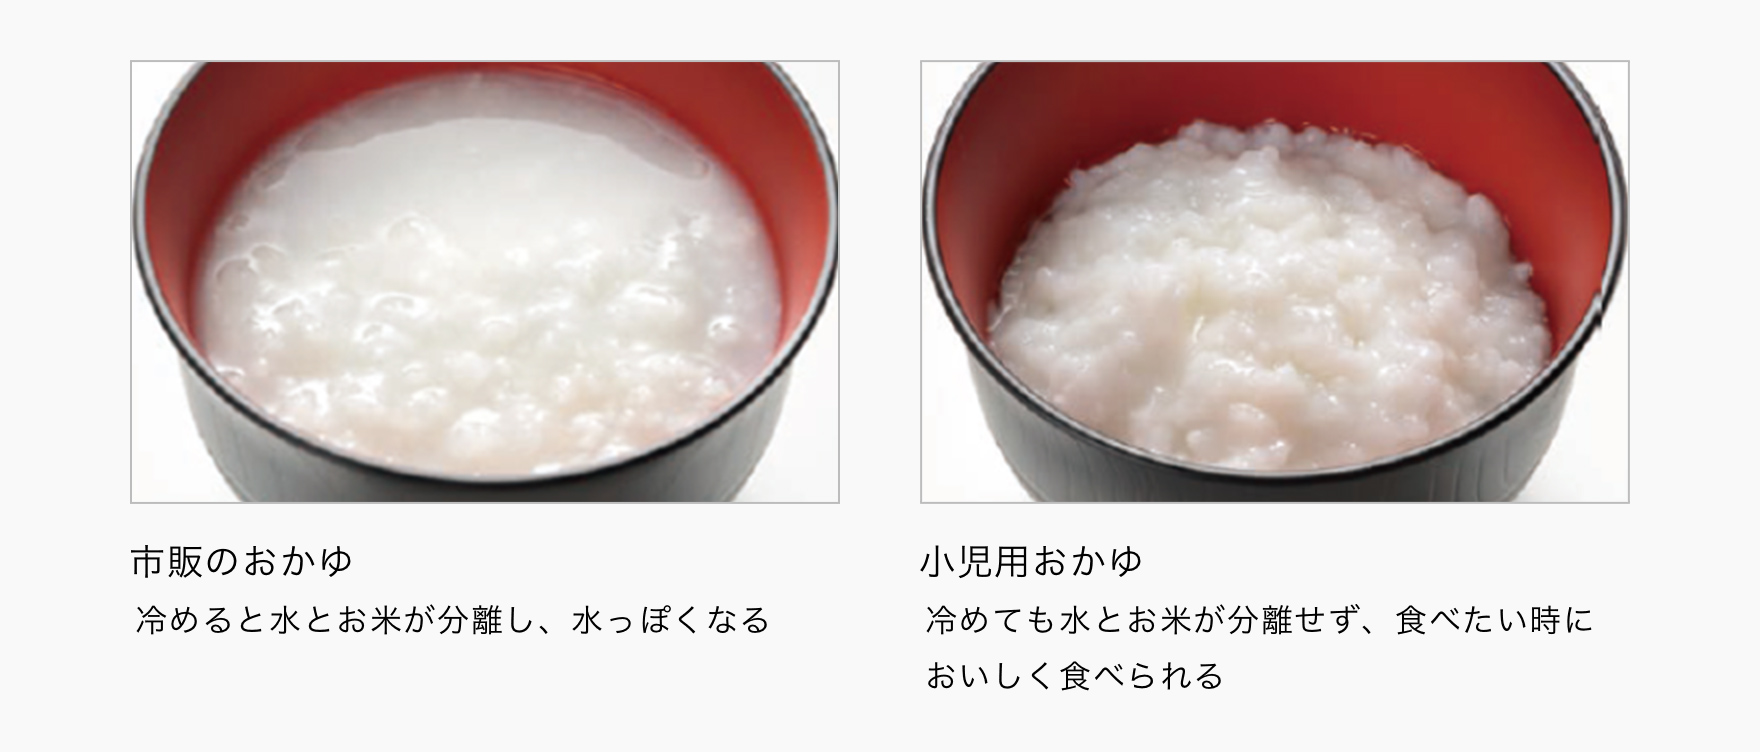 図：「市販のおかゆ」と「小児用おかゆ」の離水比較 市販のおかゆ 冷めると水とお米が分離し、水っぽくなる。 小児用おかゆ 冷めても水とお米が分離せず、食べたい時においしく食べられる